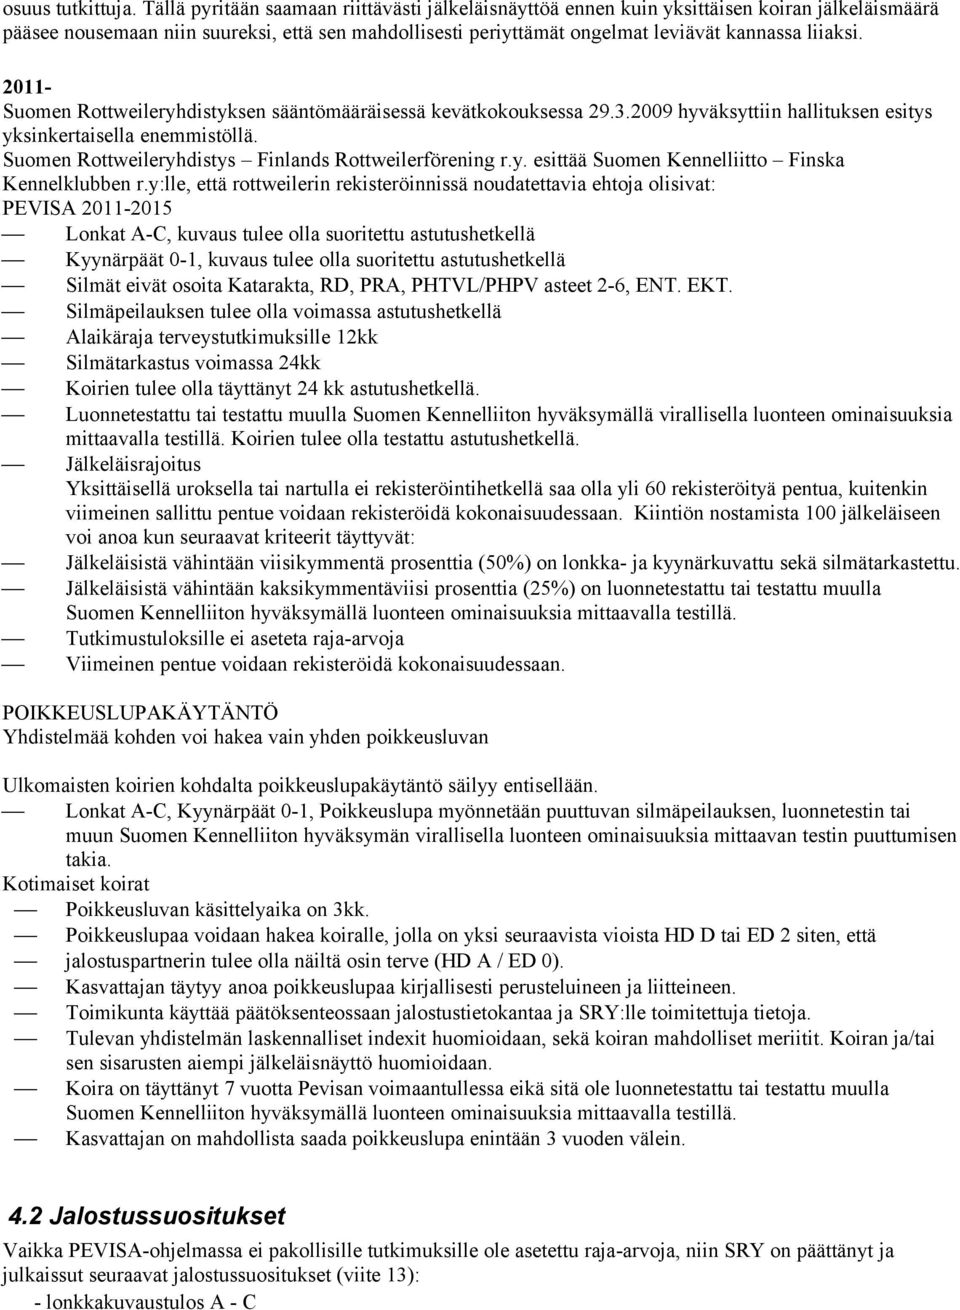 2011- Suomen Rottweileryhdistyksen sääntömääräisessä kevätkokouksessa 29.3.2009 hyväksyttiin hallituksen esitys yksinkertaisella enemmistöllä. Suomen Rottweileryhdistys Finlands Rottweilerförening r.